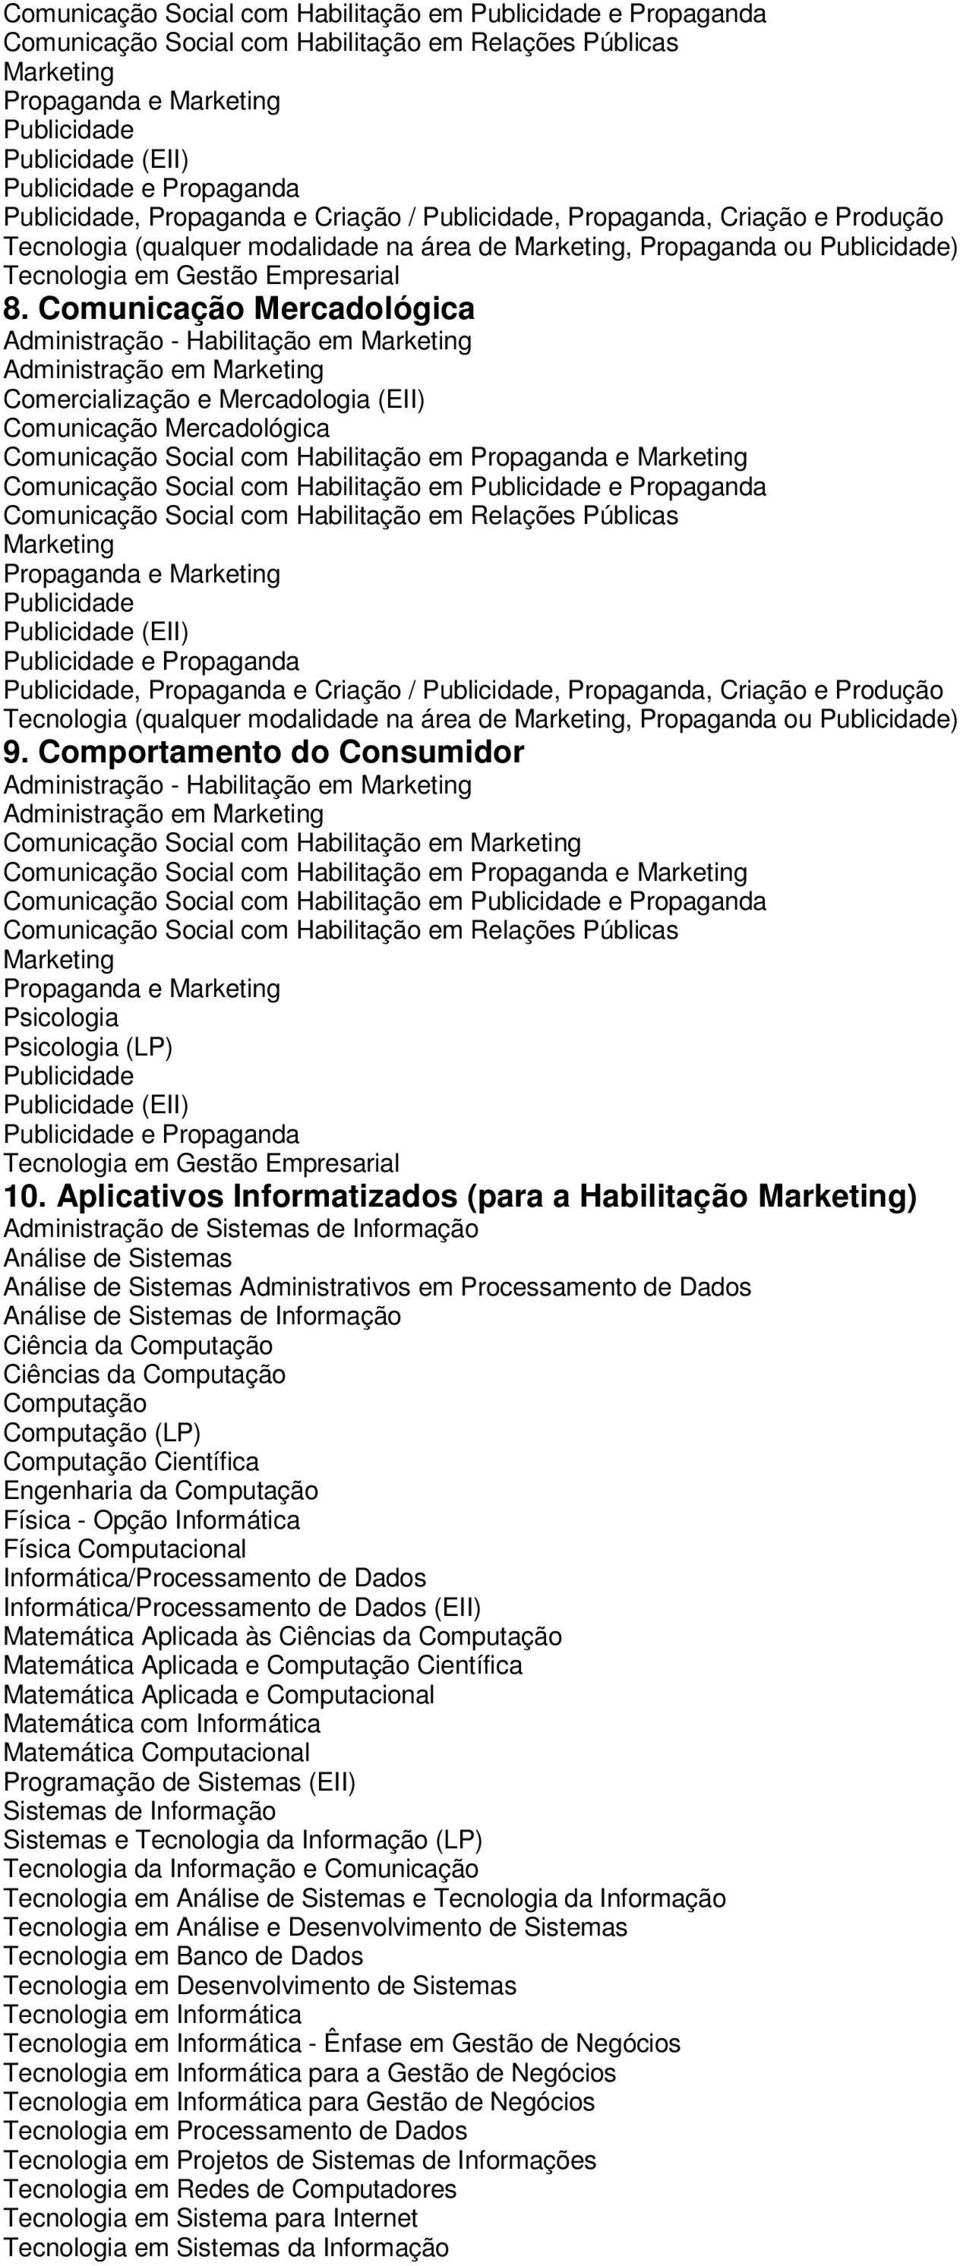 Comportamento do Consumidor em Comunicação Social com Habilitação em Propaganda e Psicologia Psicologia (LP) (EII) e Propaganda 10.